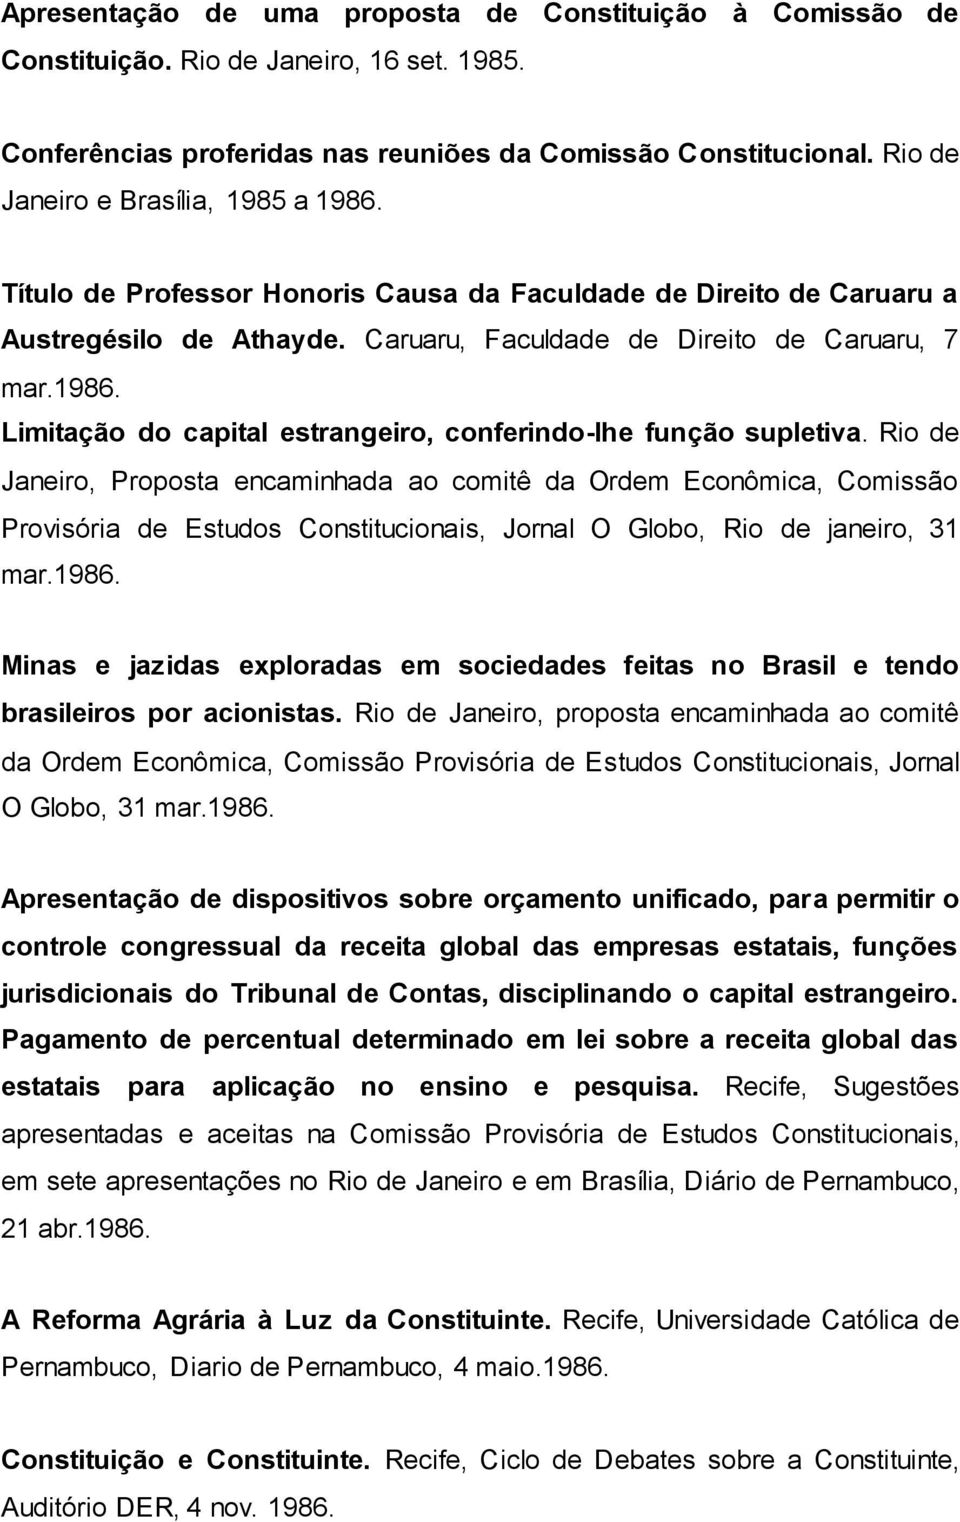 Rio de Janeiro, Proposta encaminhada ao comitê da Ordem Econômica, Comissão Provisória de Estudos Constitucionais, Jornal O Globo, Rio de janeiro, 31 mar.1986.